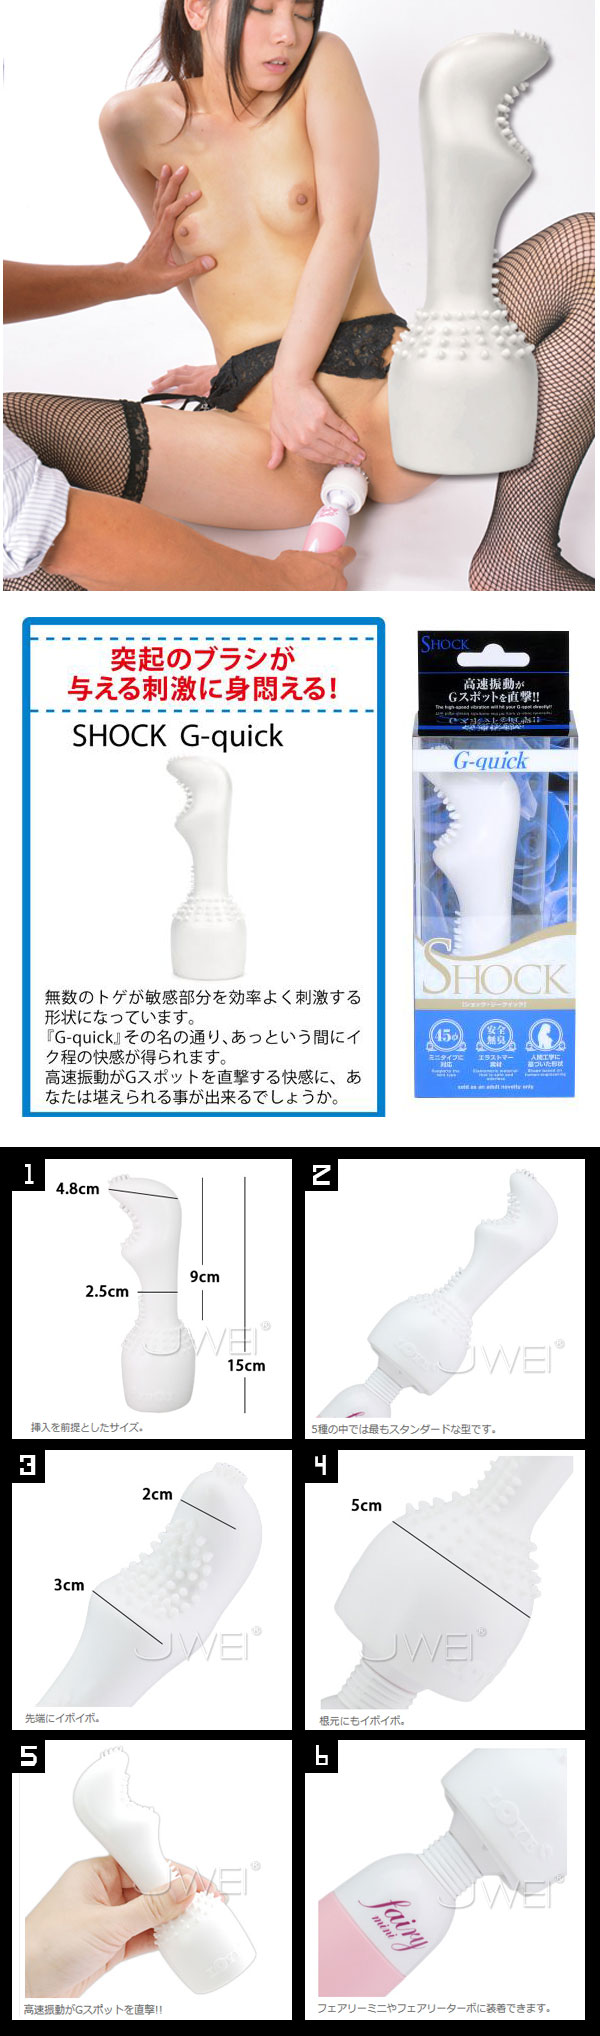 日本原裝進口NPG．SHOCK G-quick第六代AV女優按摩棒專用配件(G攻型)